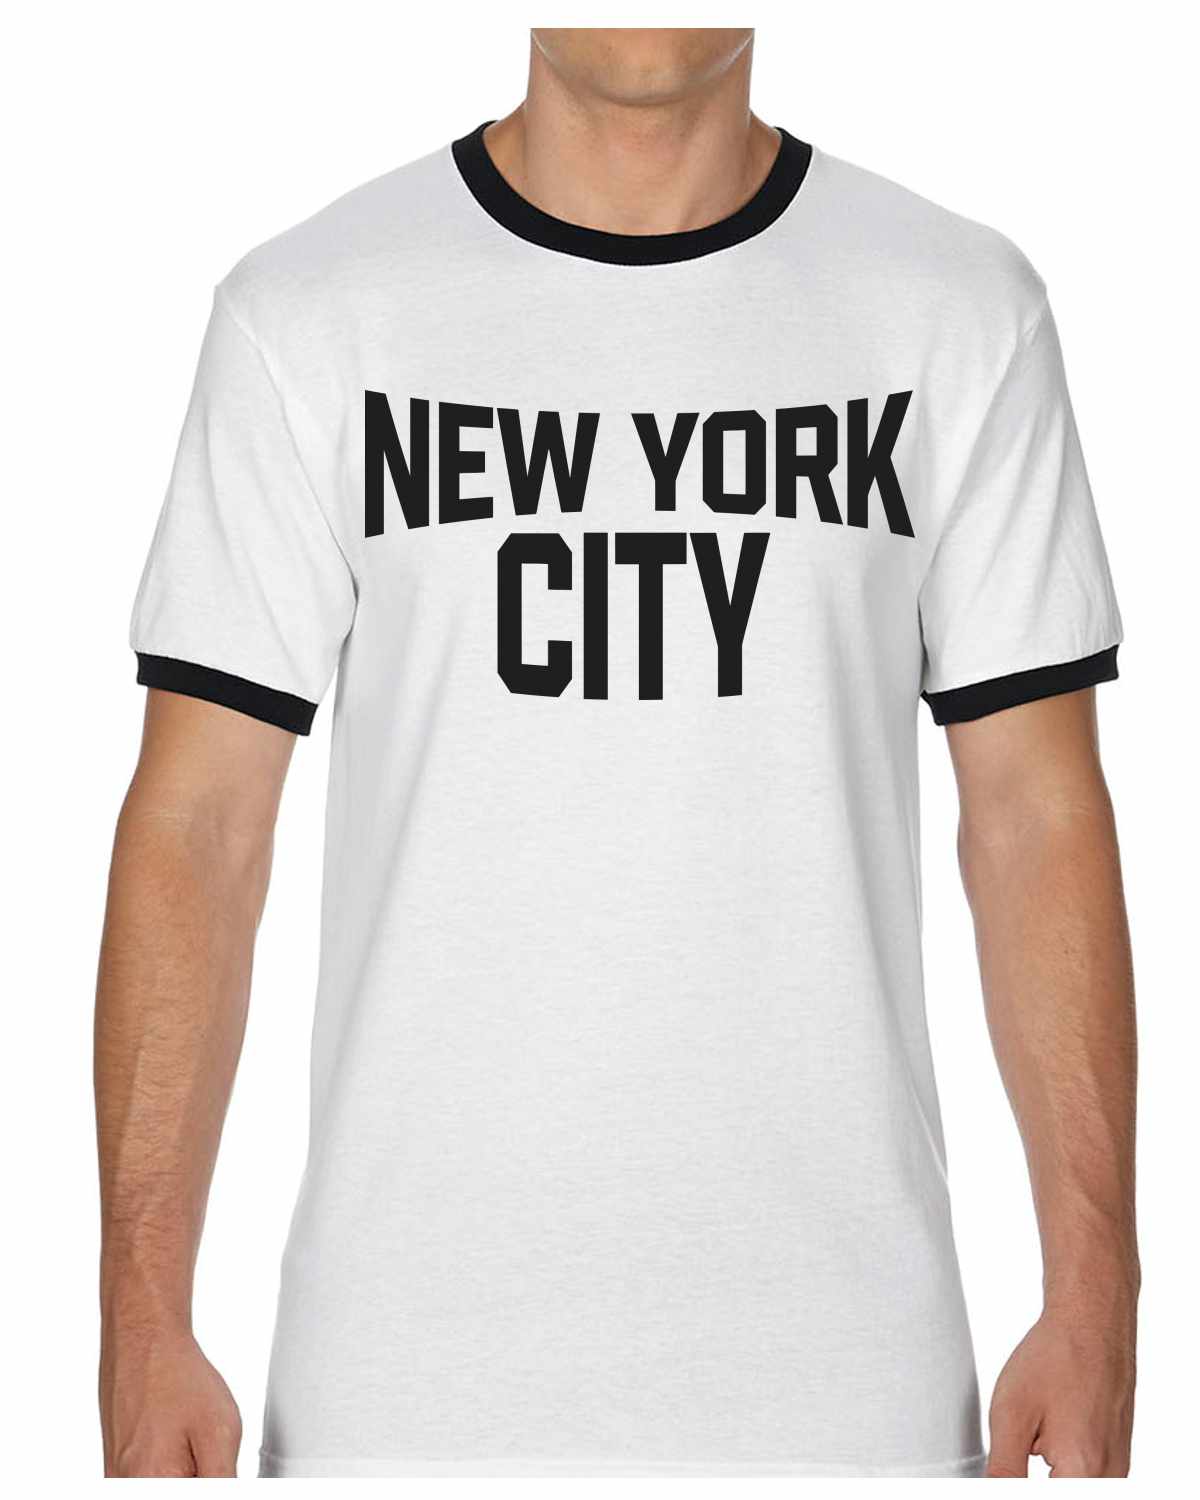 New York City on Ringer Shirt (#1194-8)